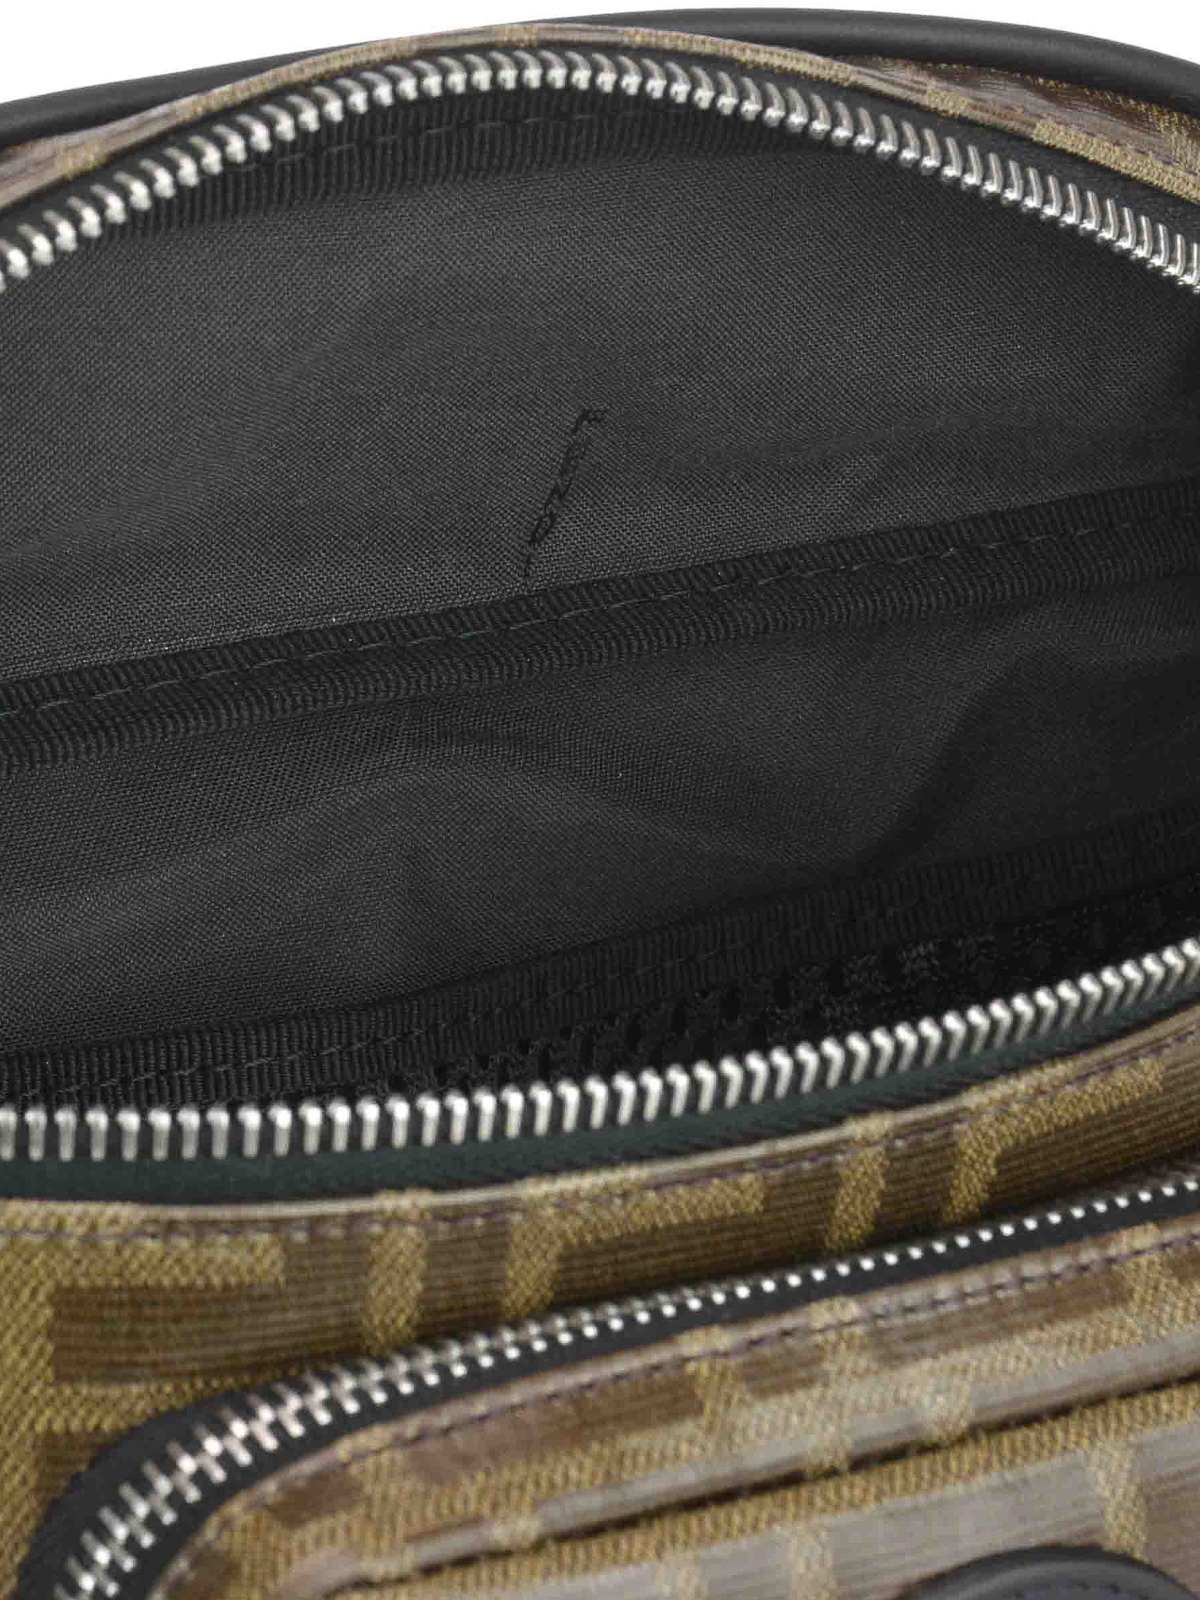 FENDI Logo Print Belt Bag